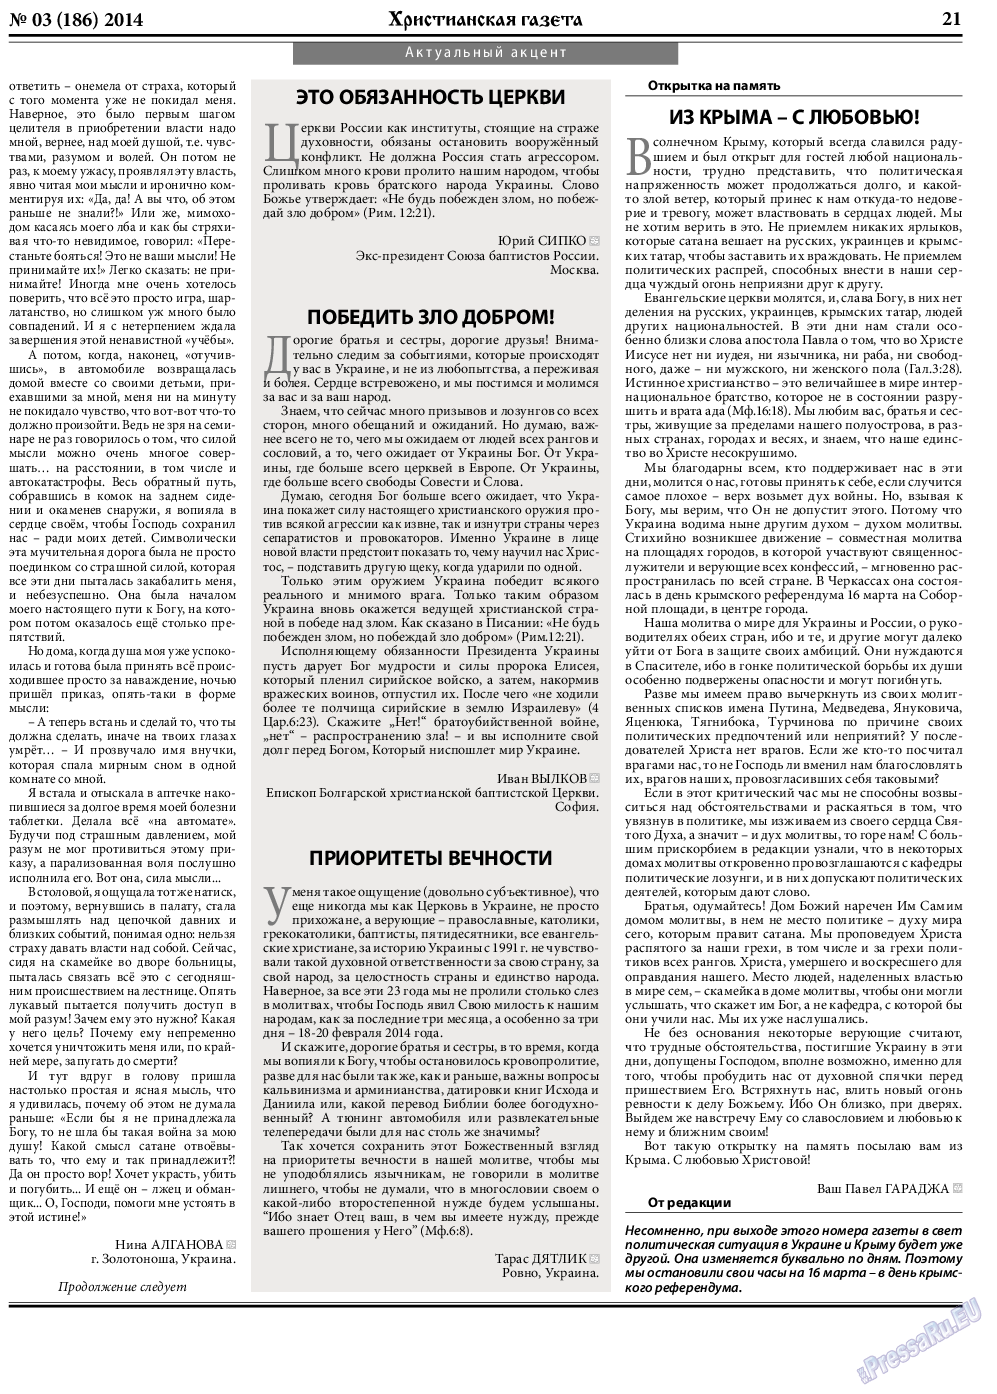 Христианская газета, газета. 2014 №3 стр.29